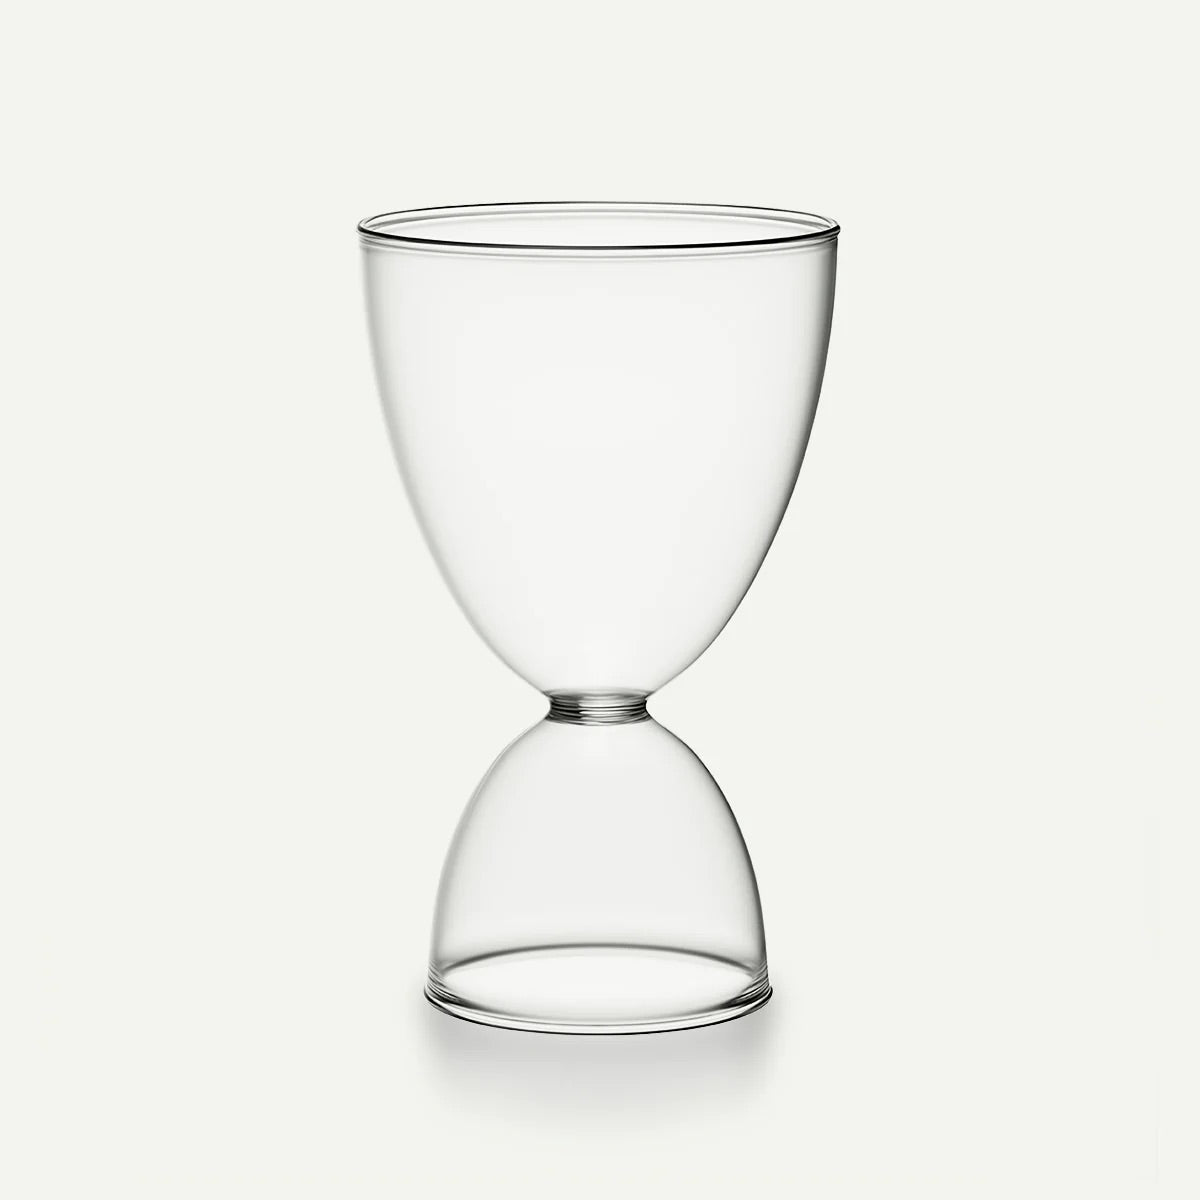 Mamo Classic Cocktail Glass - Monotone